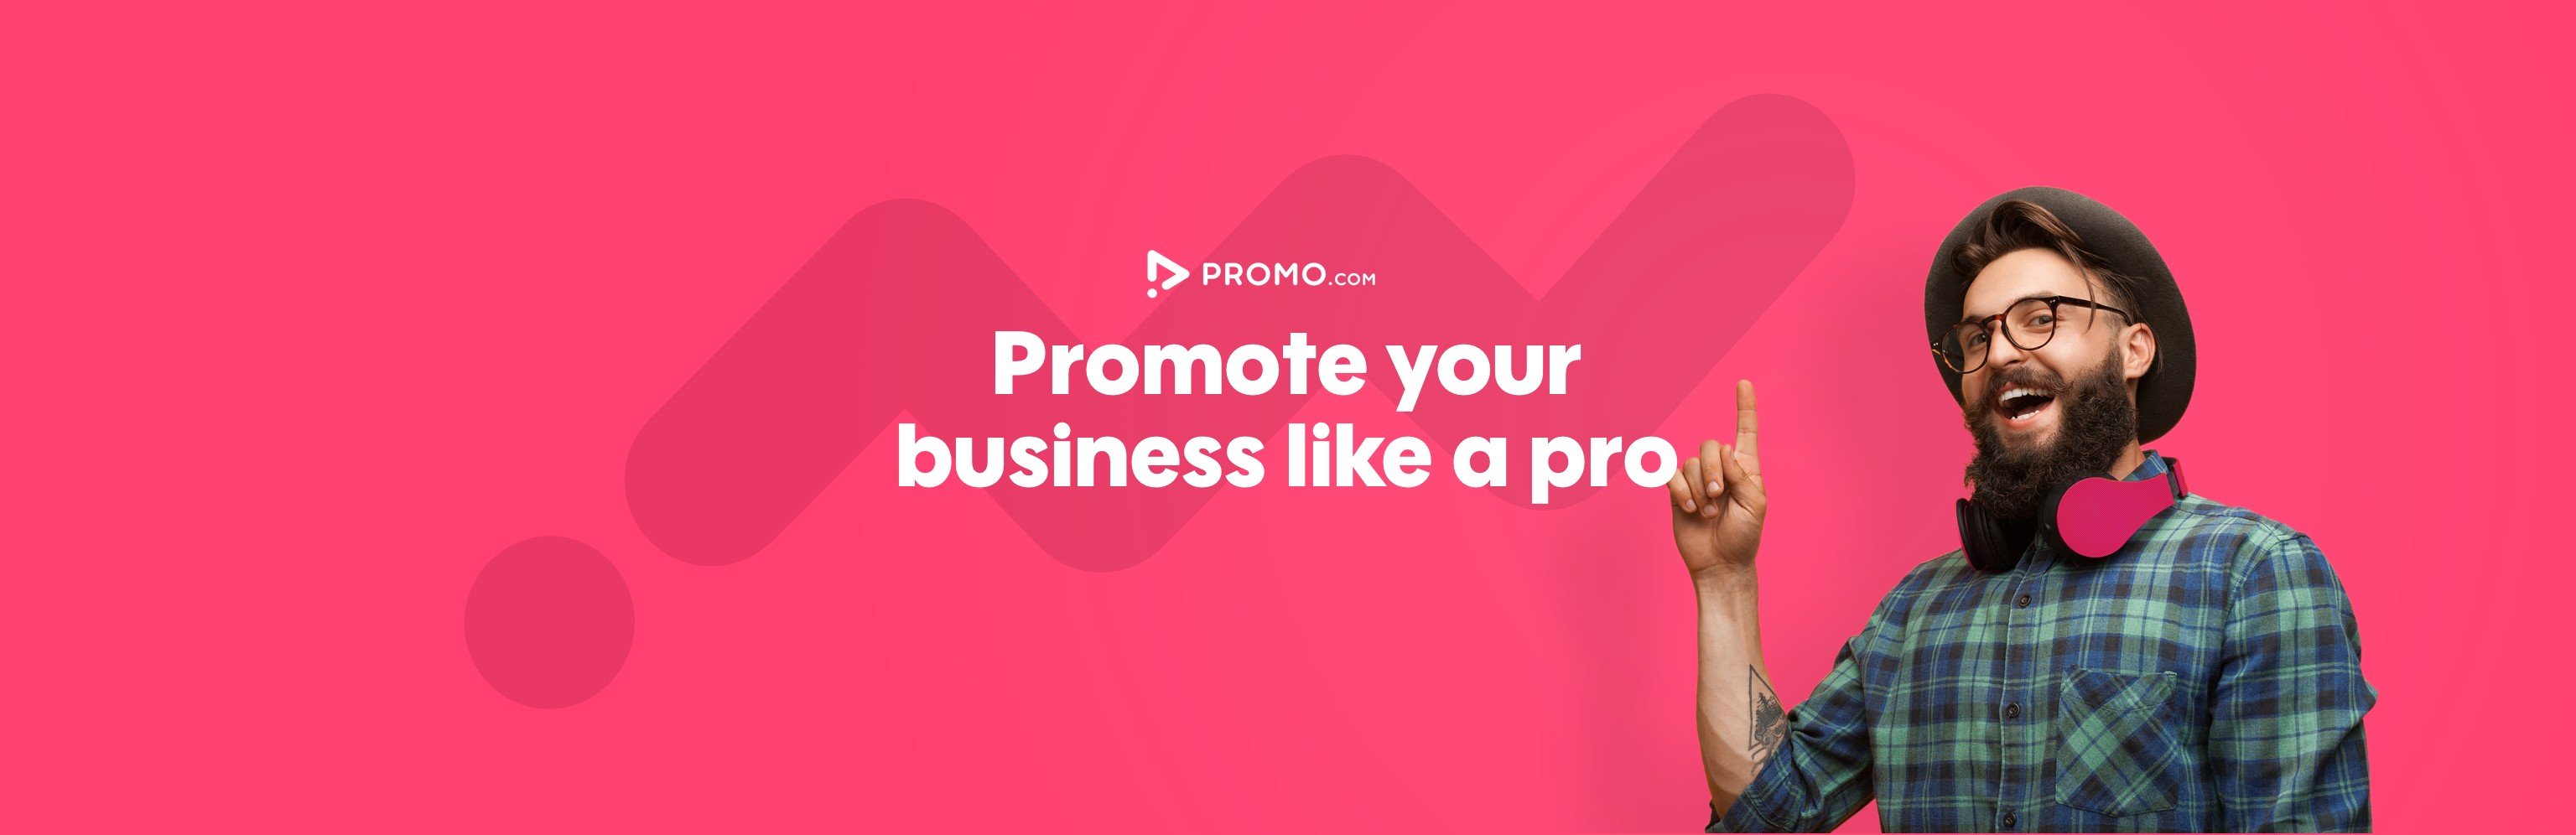 Сайт Promo.com признался в утечке данных 22 млн своих пользователей